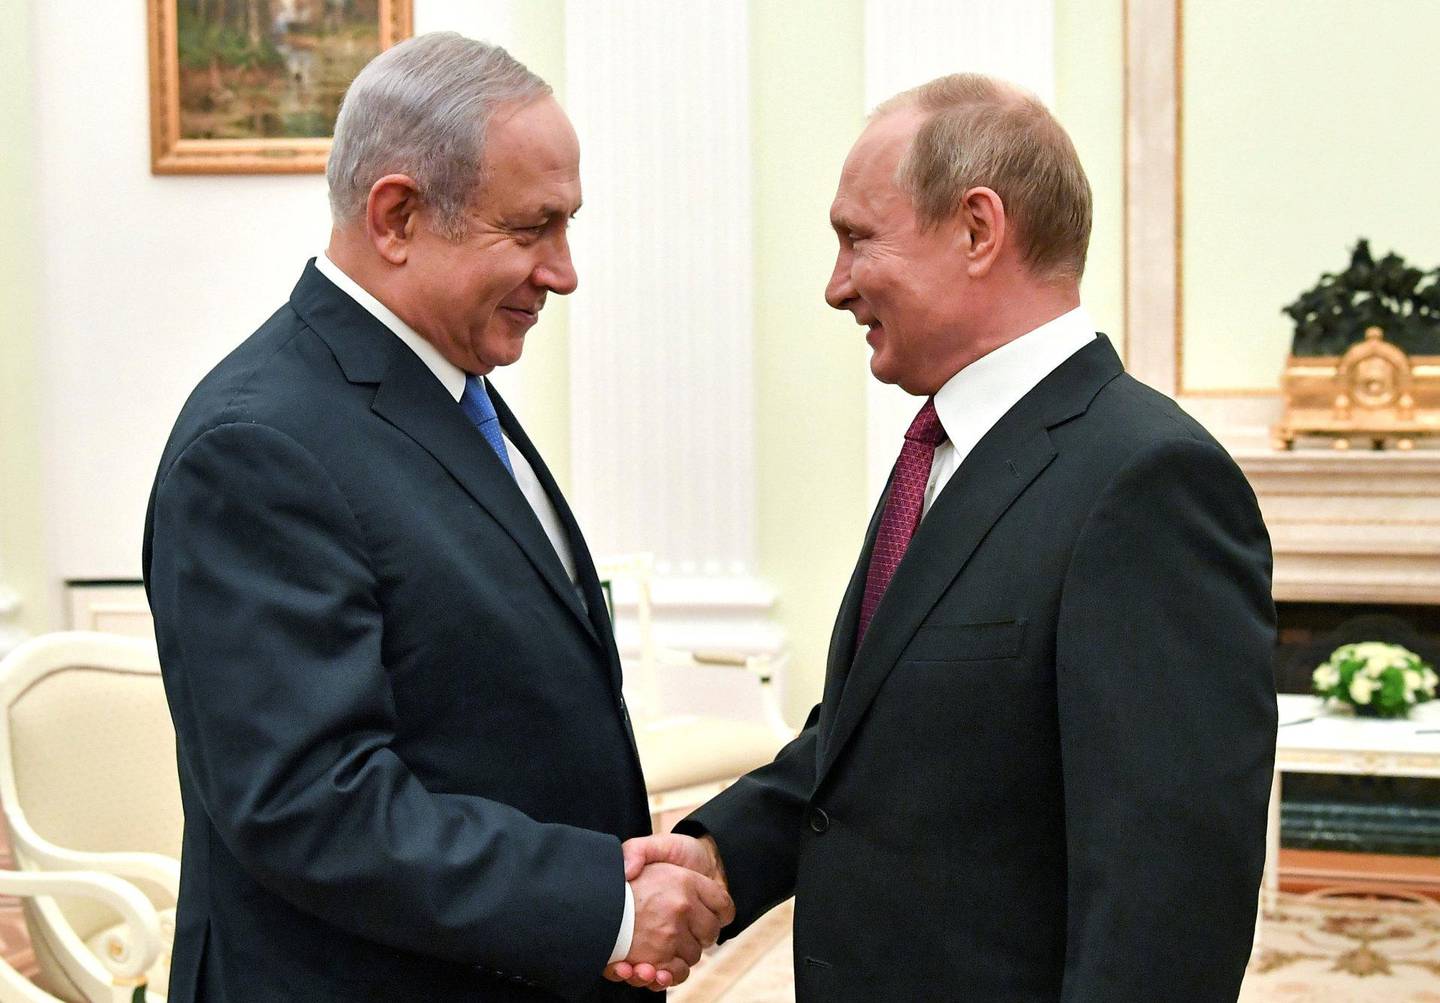 Flere møter: Siden krigen i Syria brøt ut, har Israels statsminister Benjamin Netanyahu og Russlands president Vladimir Putin hatt en skjør forståelse for hverandres krigføring. De siste årene har de to møttes en rekke ganger. FOTO: NTB SCANPIX